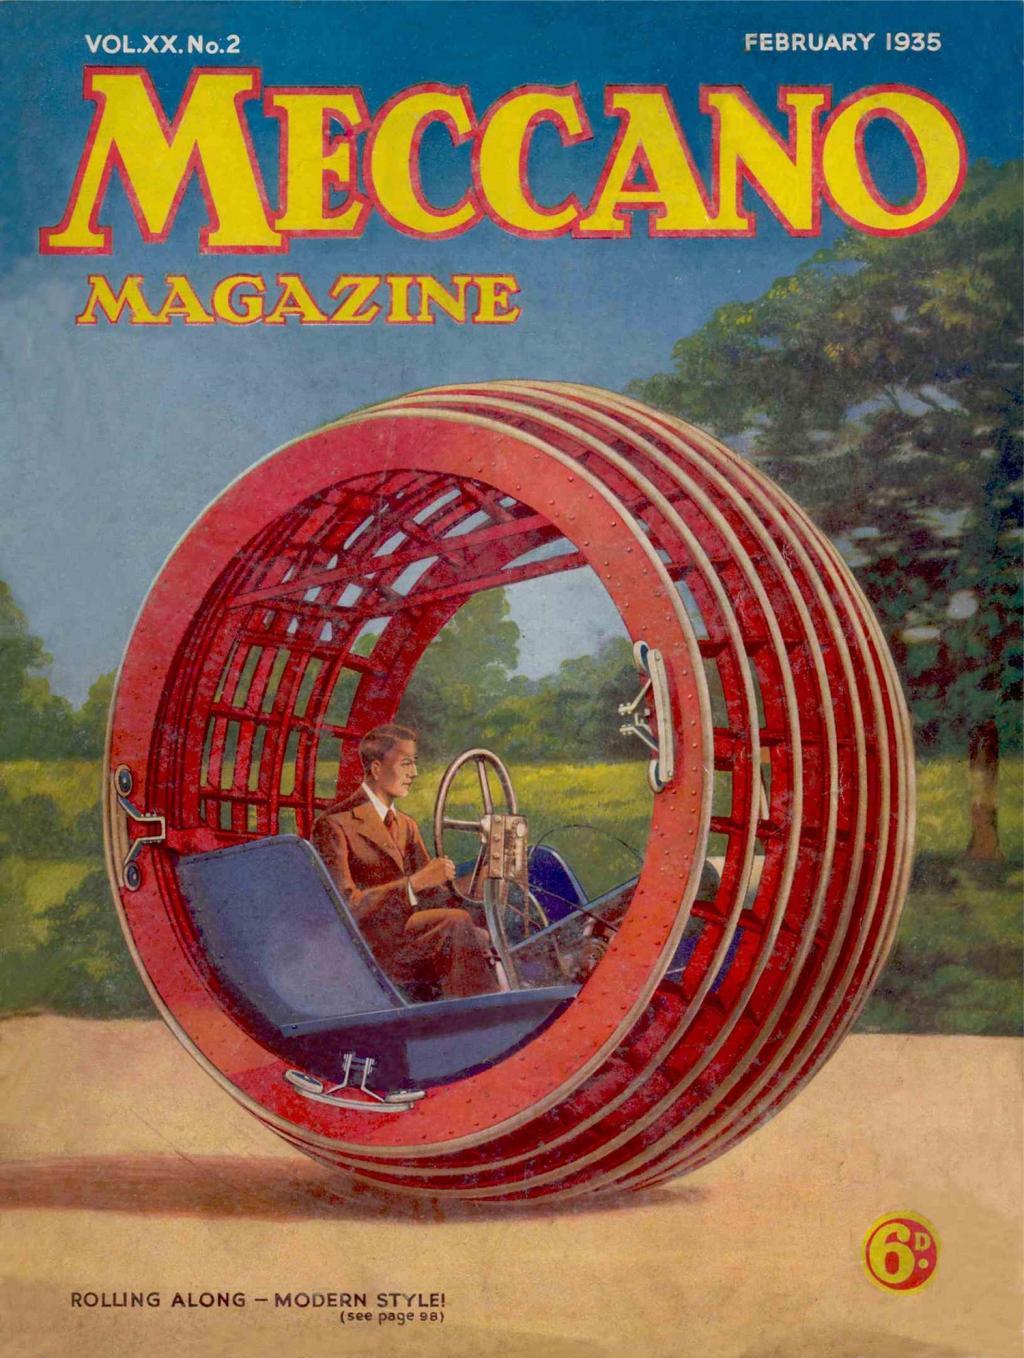 Book Cover For Meccano Magazine v20 2